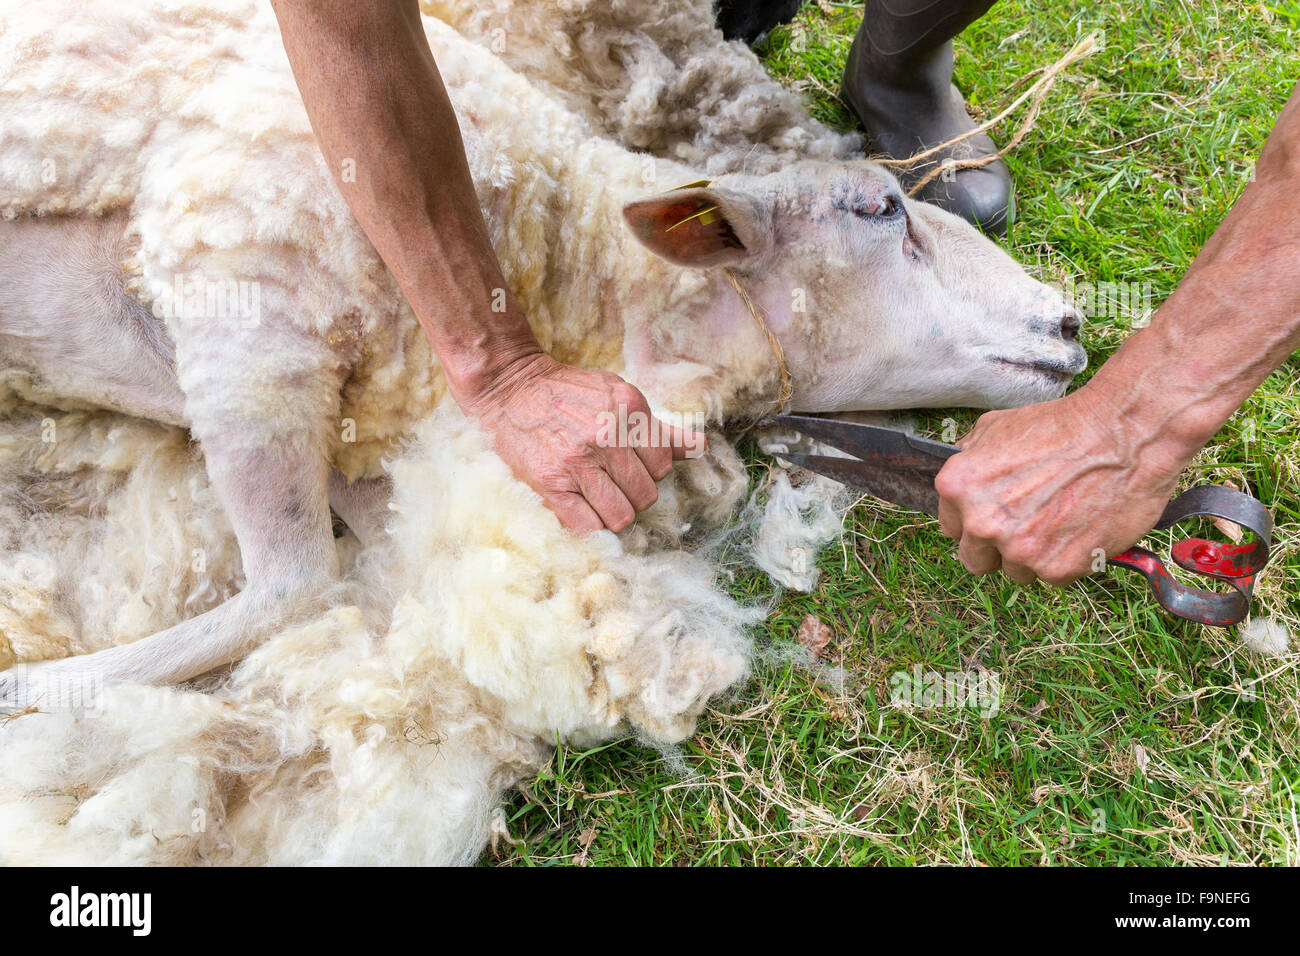 Hände des Mannes rasieren Wolle von Schafen mit einer Schere Stockfoto